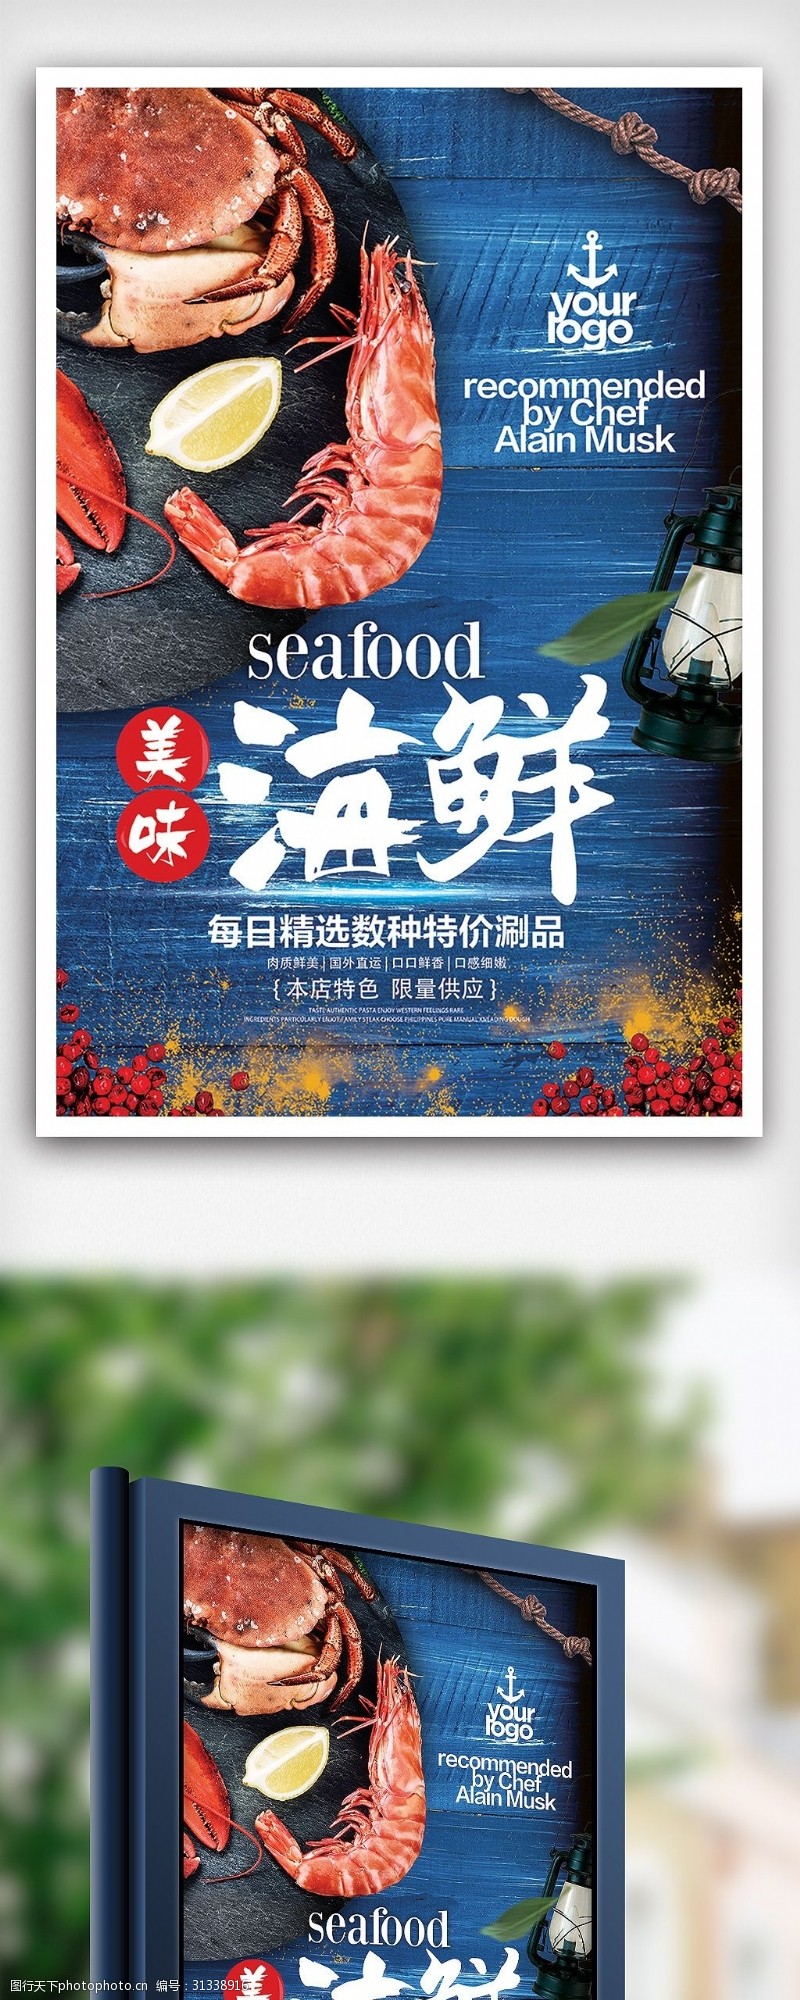 海鲜图片免费下载蓝色夏季海鲜美食餐饮海报